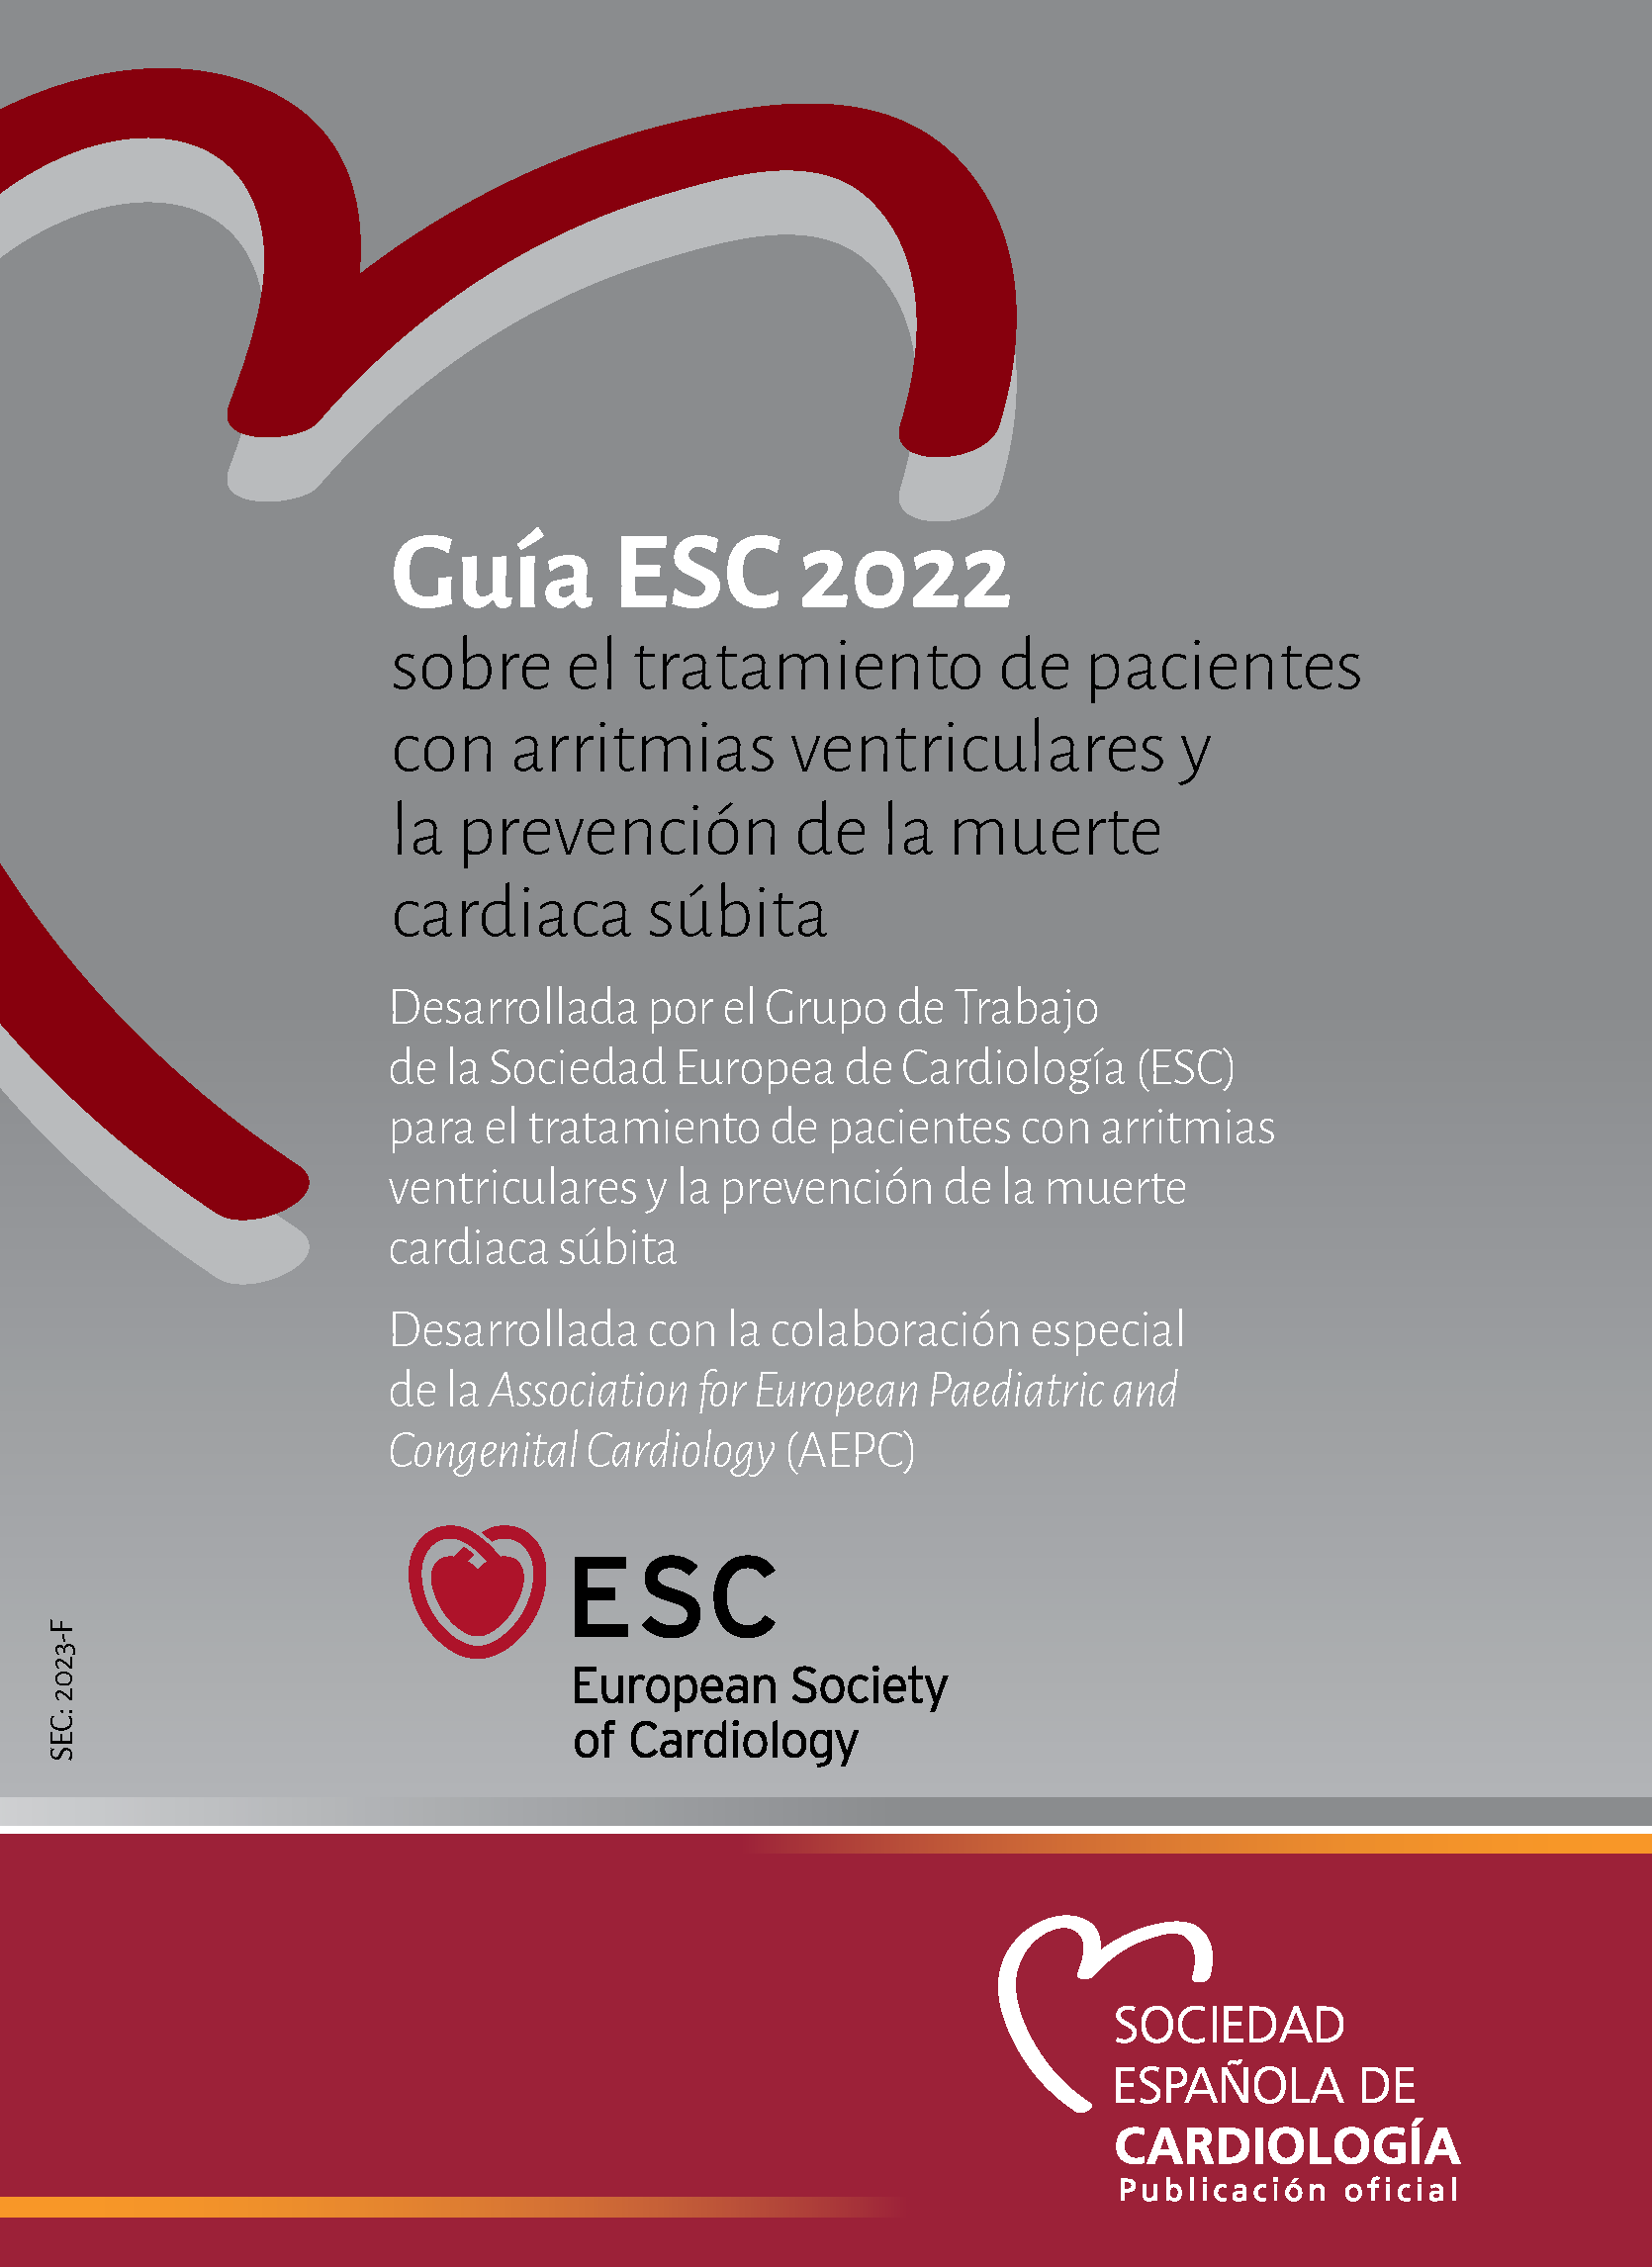 Guía ESC 2022 Cardiooncologia Página 001